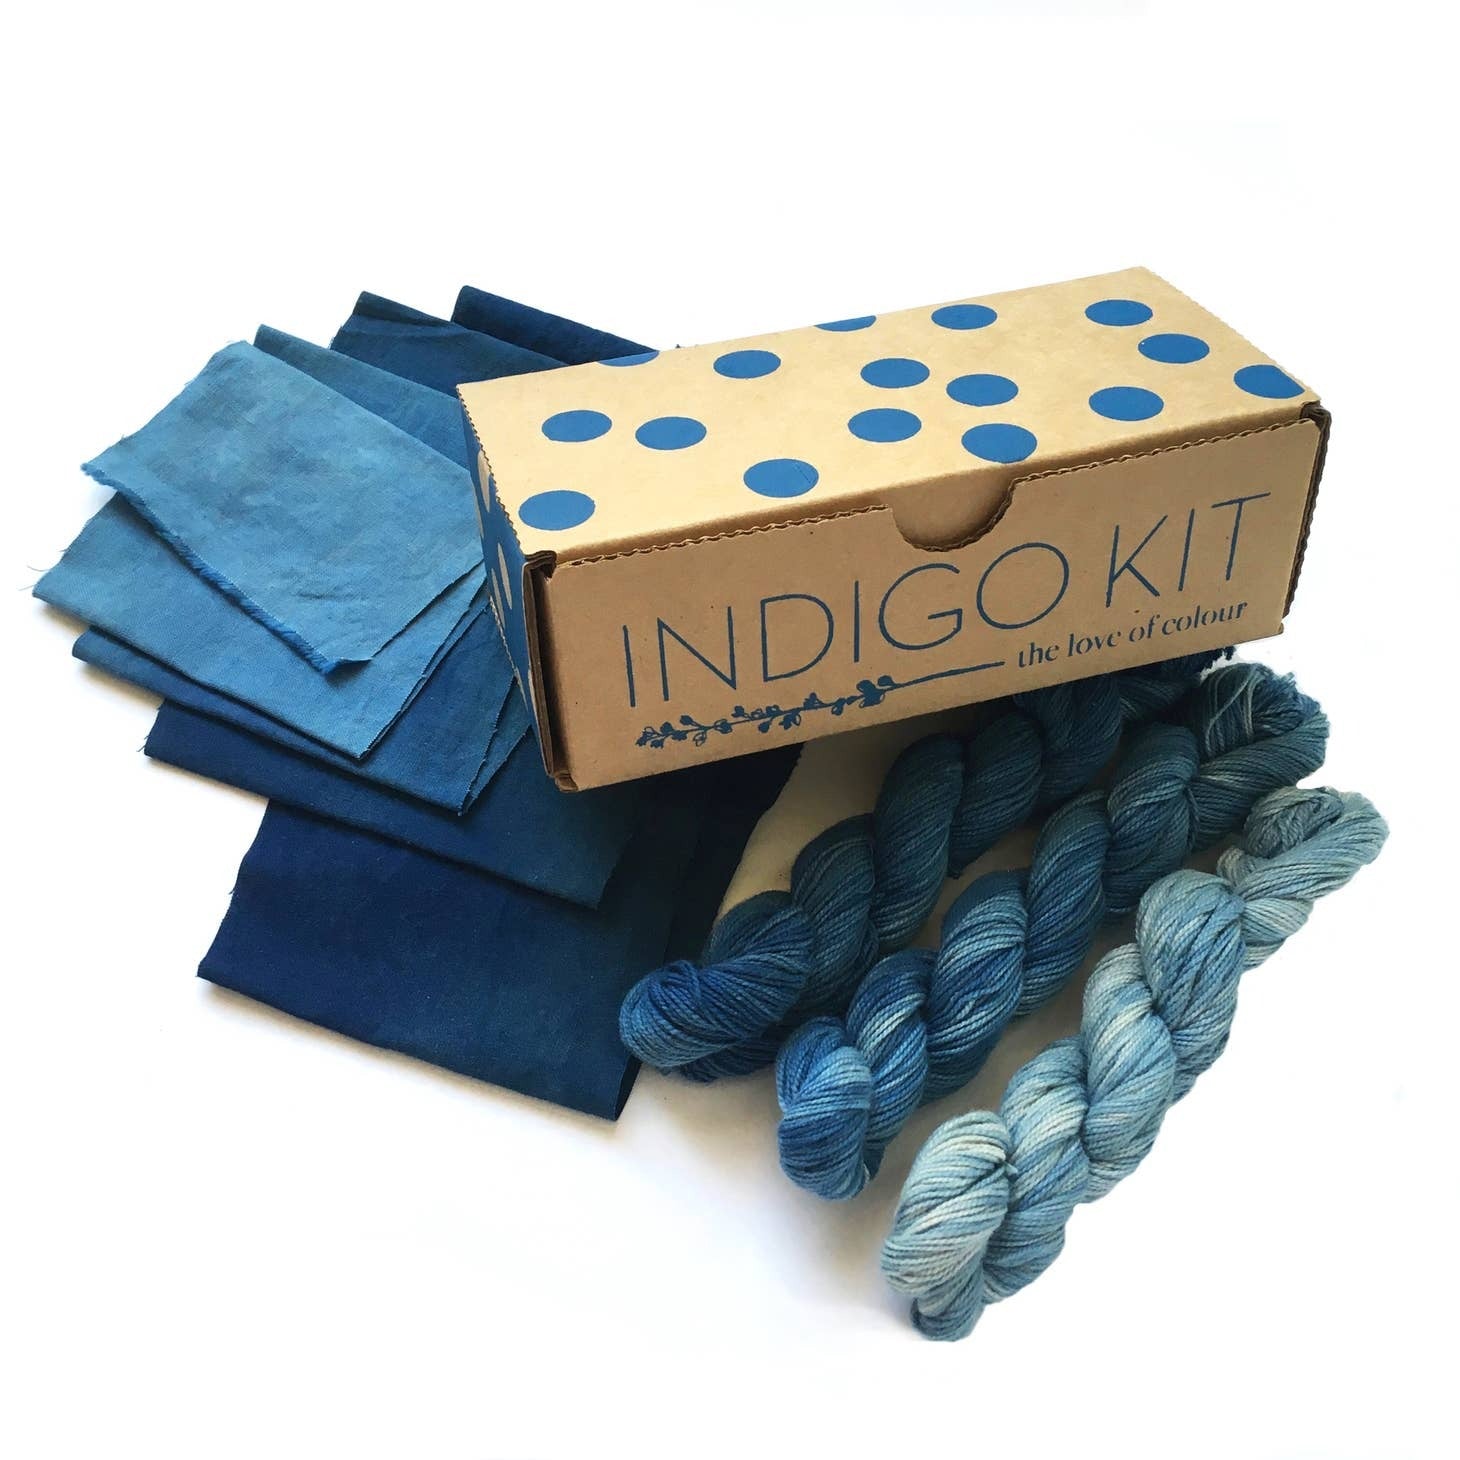 Batik Tie Dye Kit by Make Market®